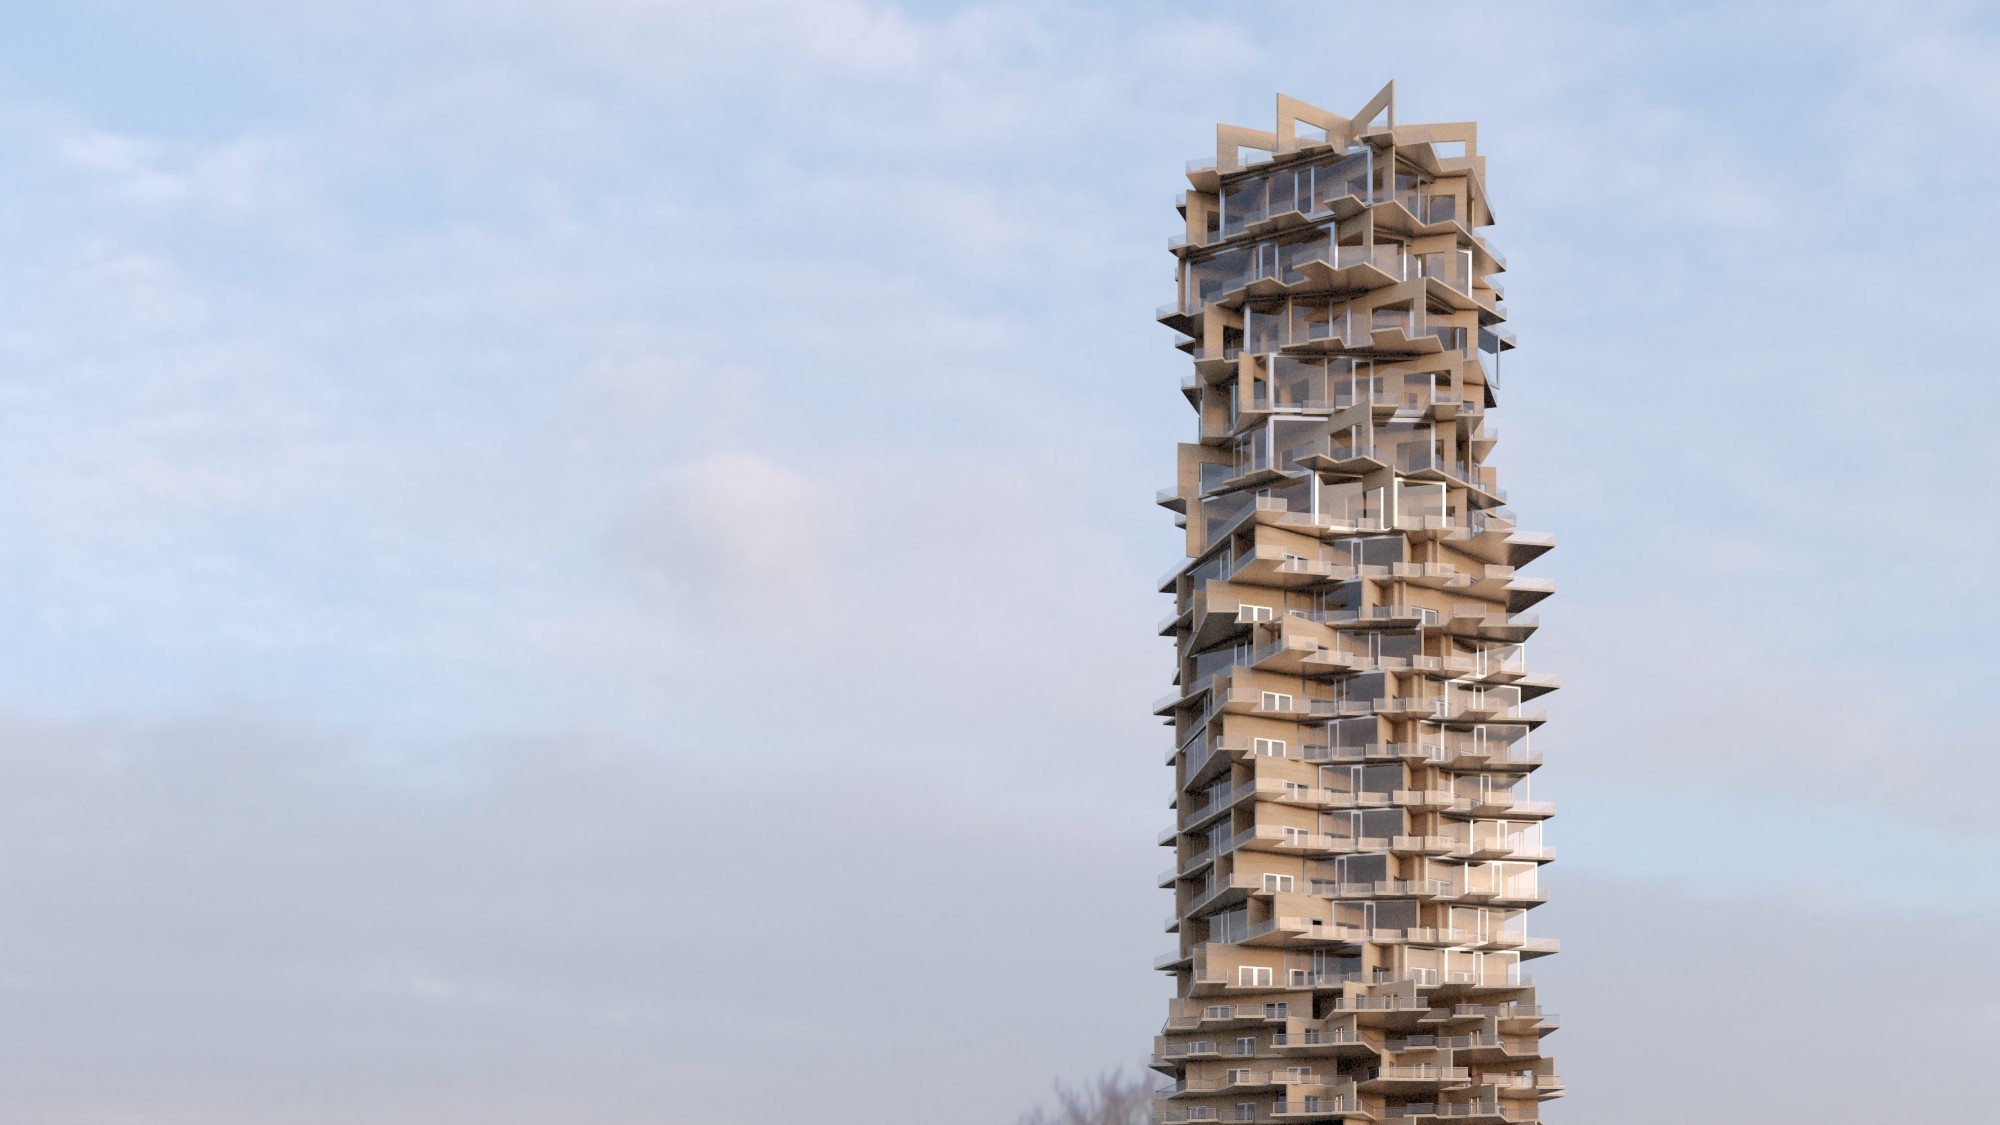 La visualisation du gratte-ciel imaginé par l'architecte Rodriguez représente un édifice construit à l'aide de bois en panneaux contreplaqués empilés les uns sur les autres.